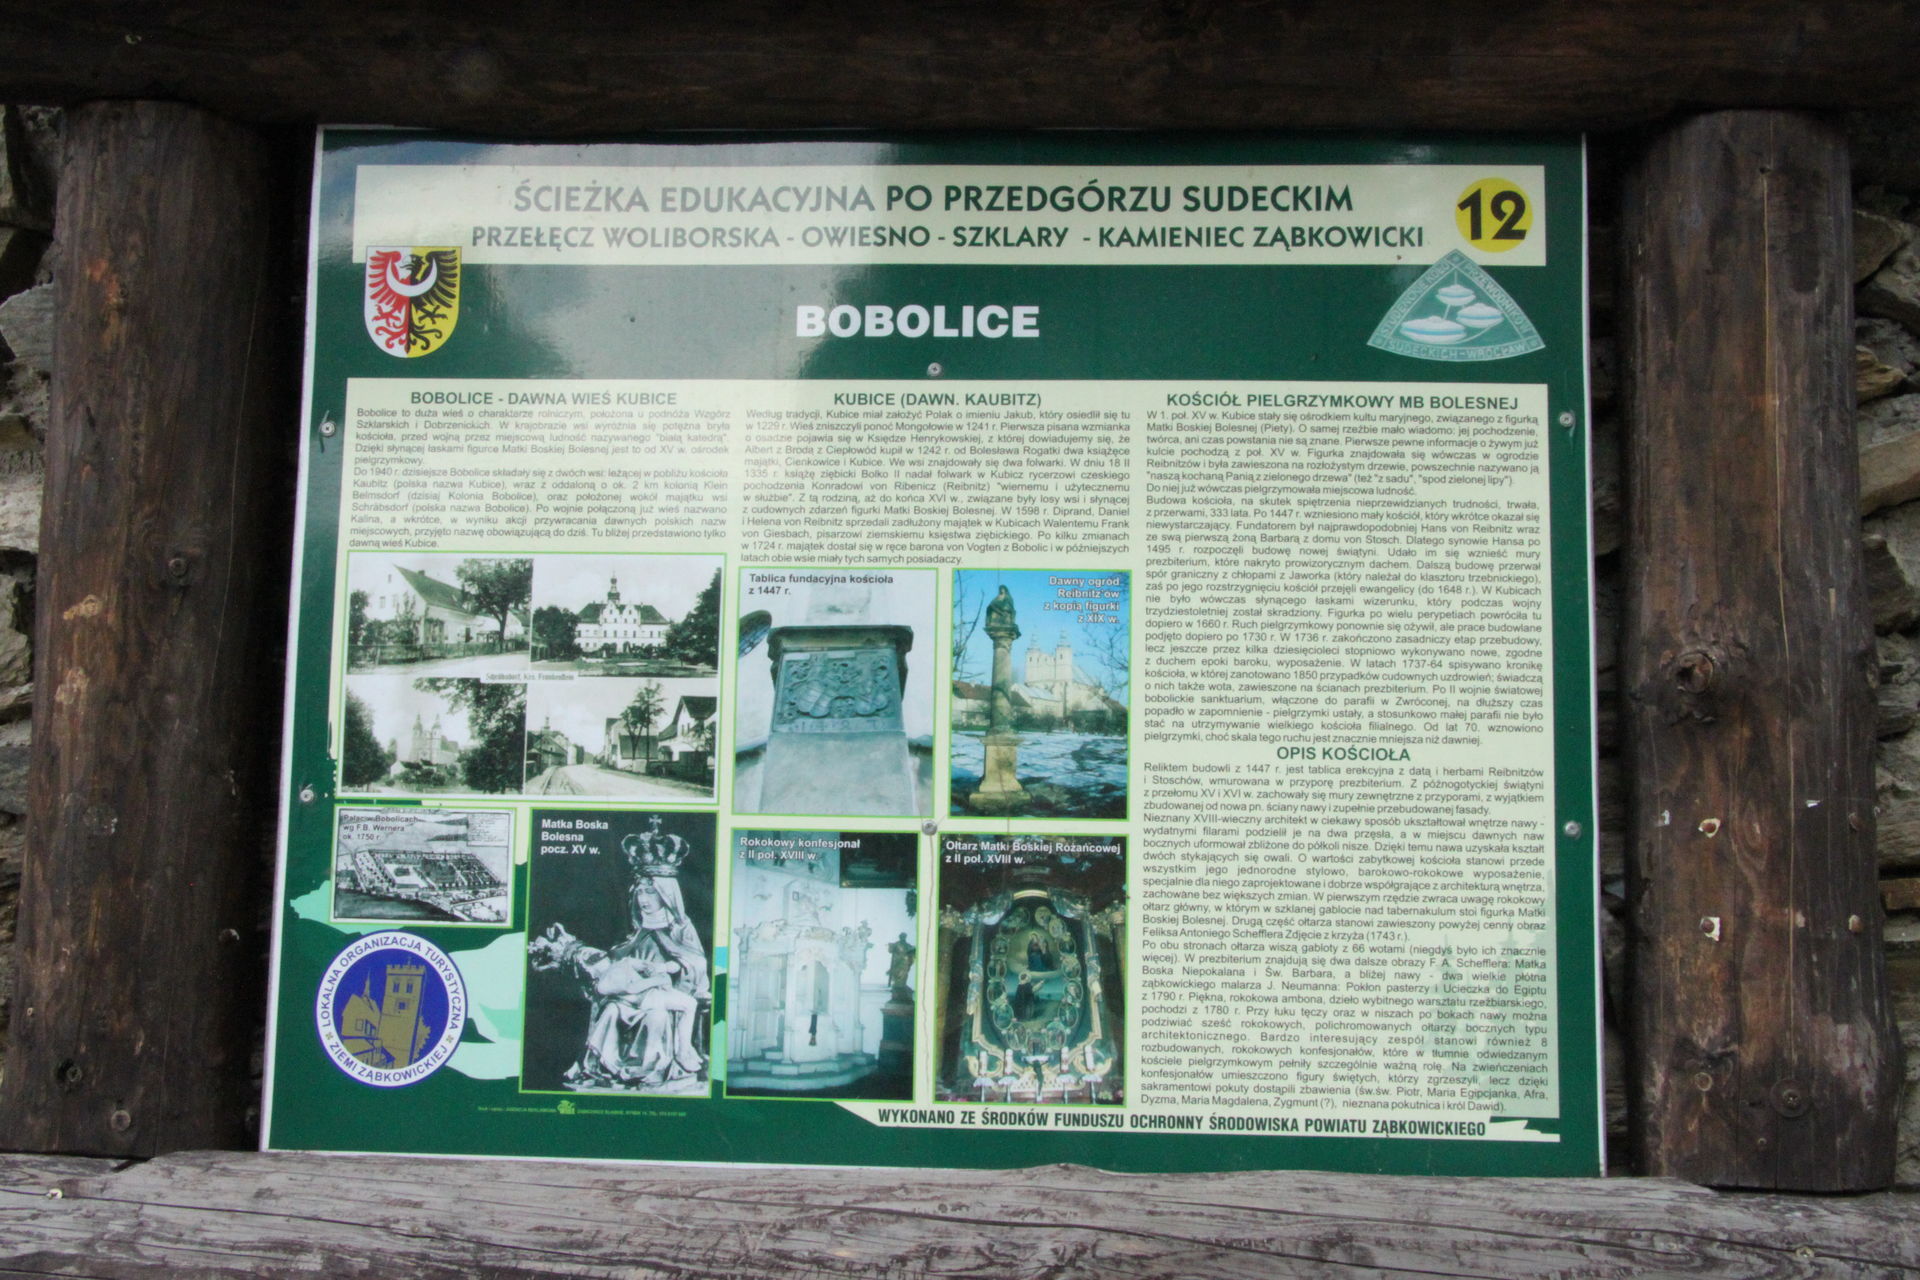 Tablica informacyjna na czarnym szlaku SKPS w Bobolicach. 1 maja 2011 r.